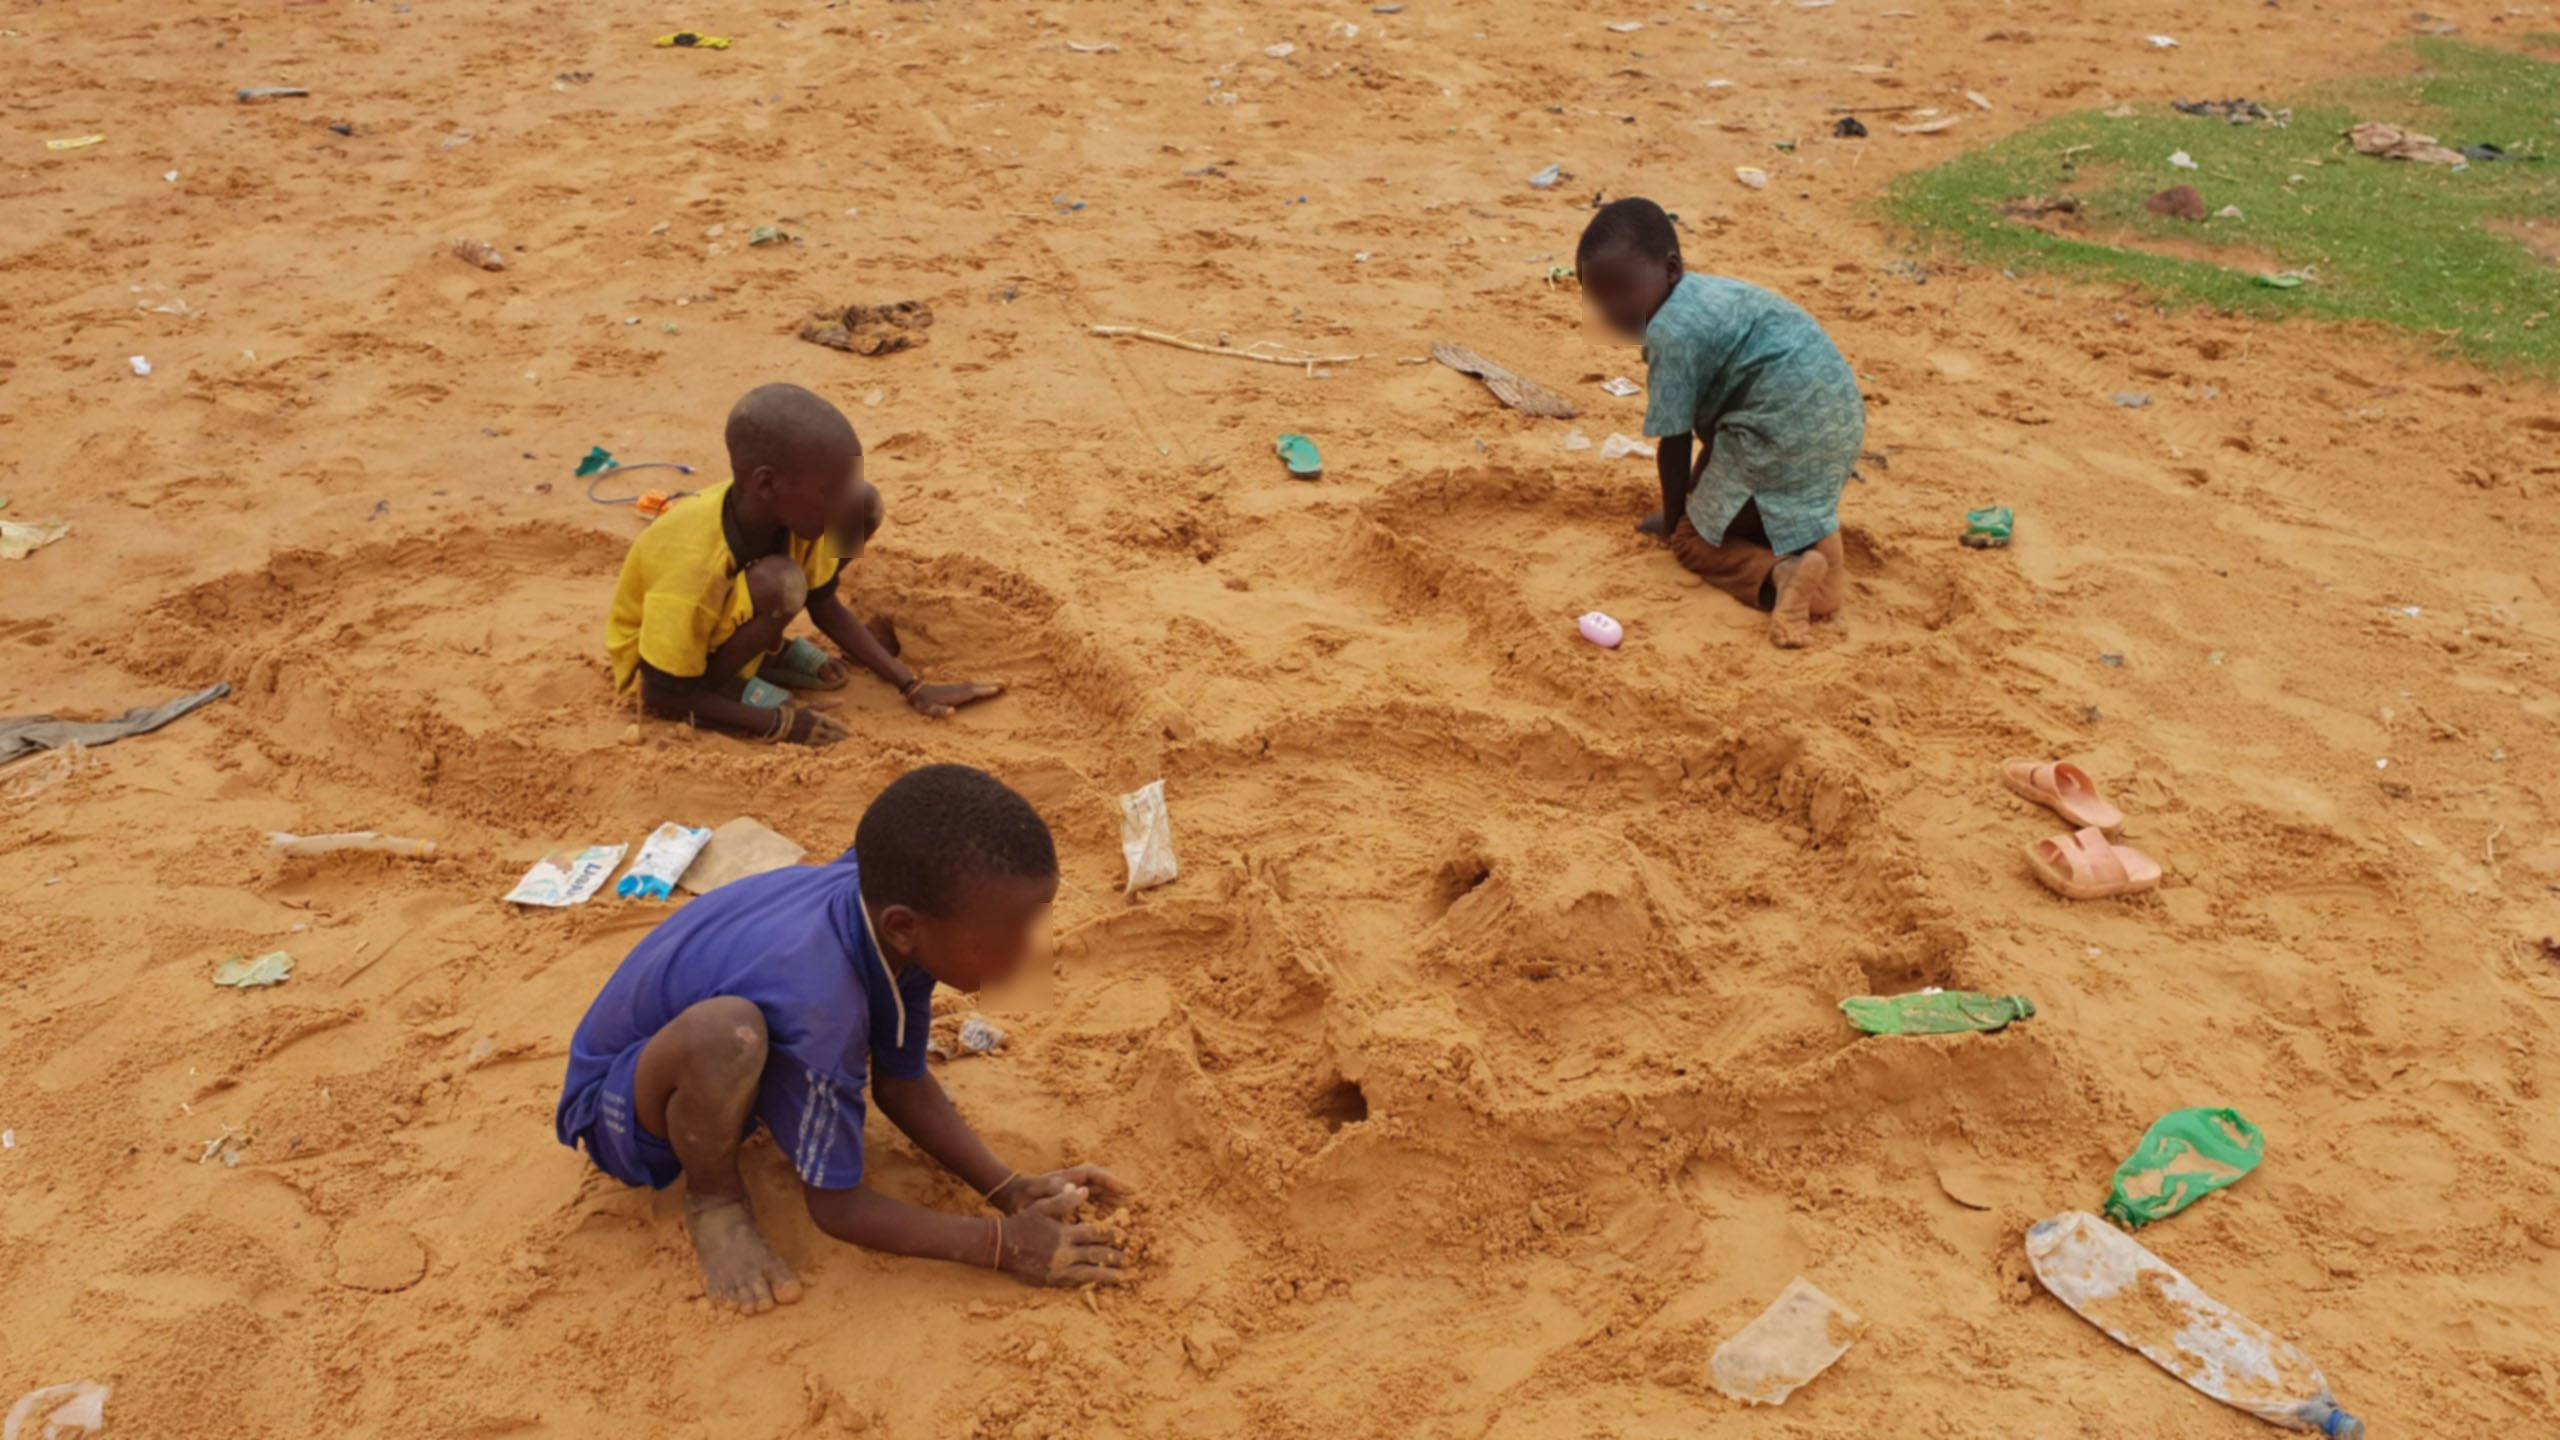 Explication sur les droits des enfants au Niger 